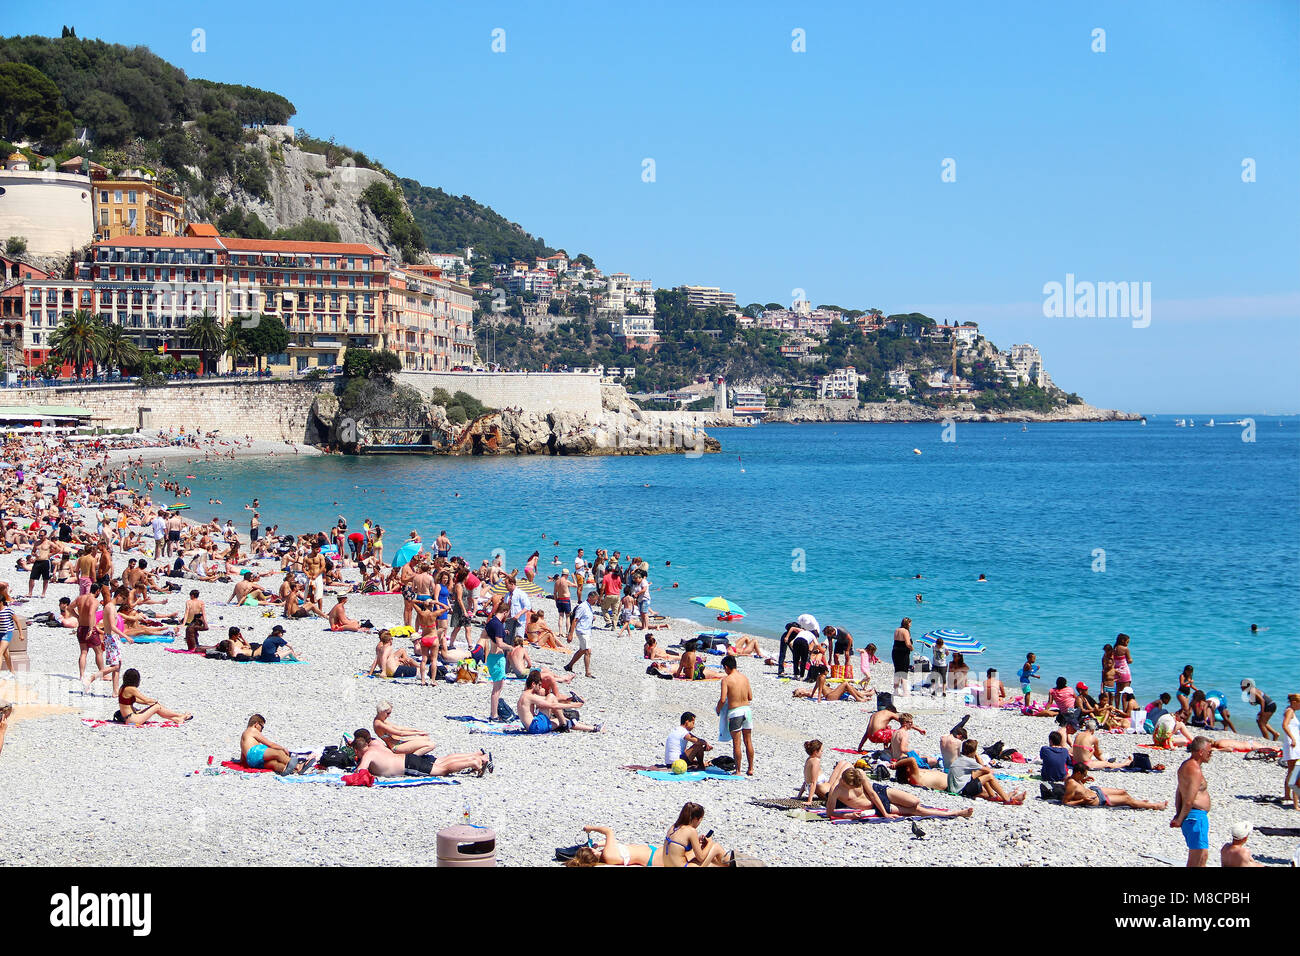 NICE, FRANCE - 22 juin 2016 : Château bondé plage et ville de Nice, Côte d'Azur Banque D'Images